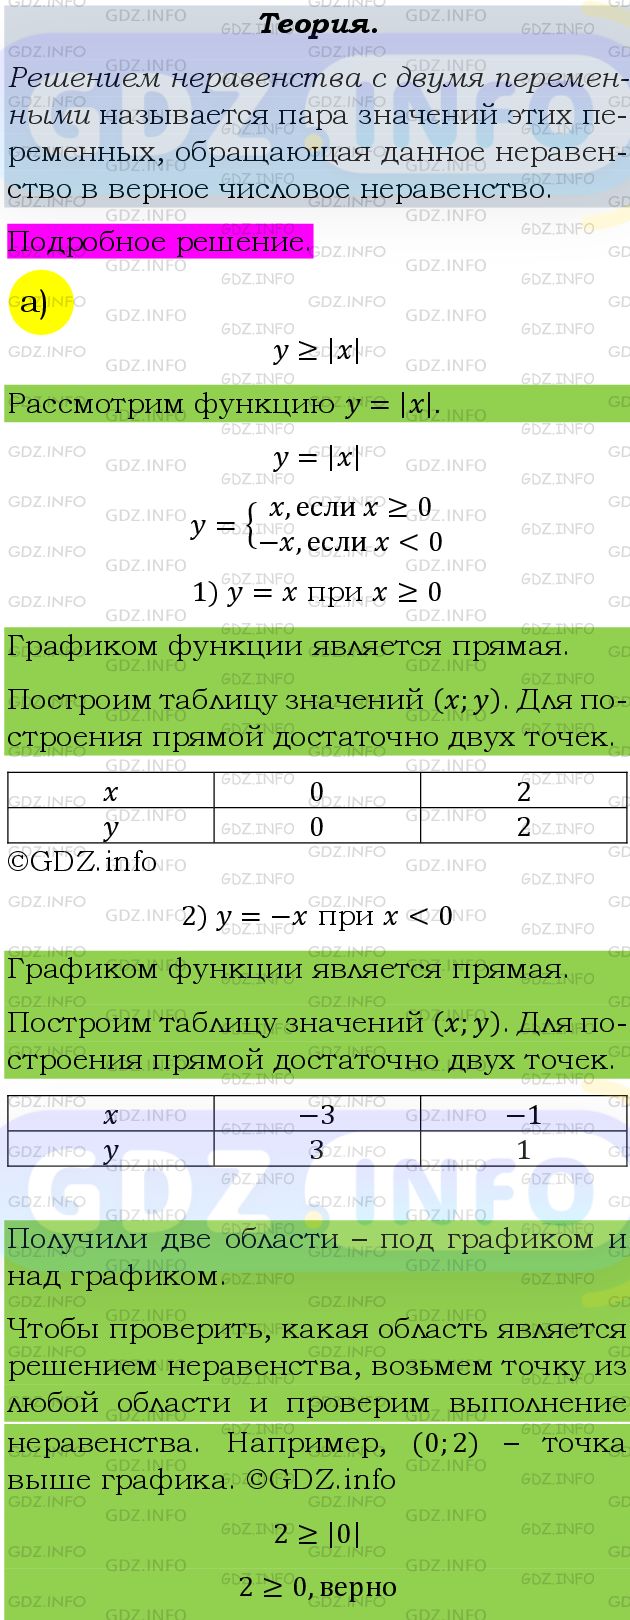 Фото подробного решения: Номер задания №519 из ГДЗ по Алгебре 9 класс: Макарычев Ю.Н.